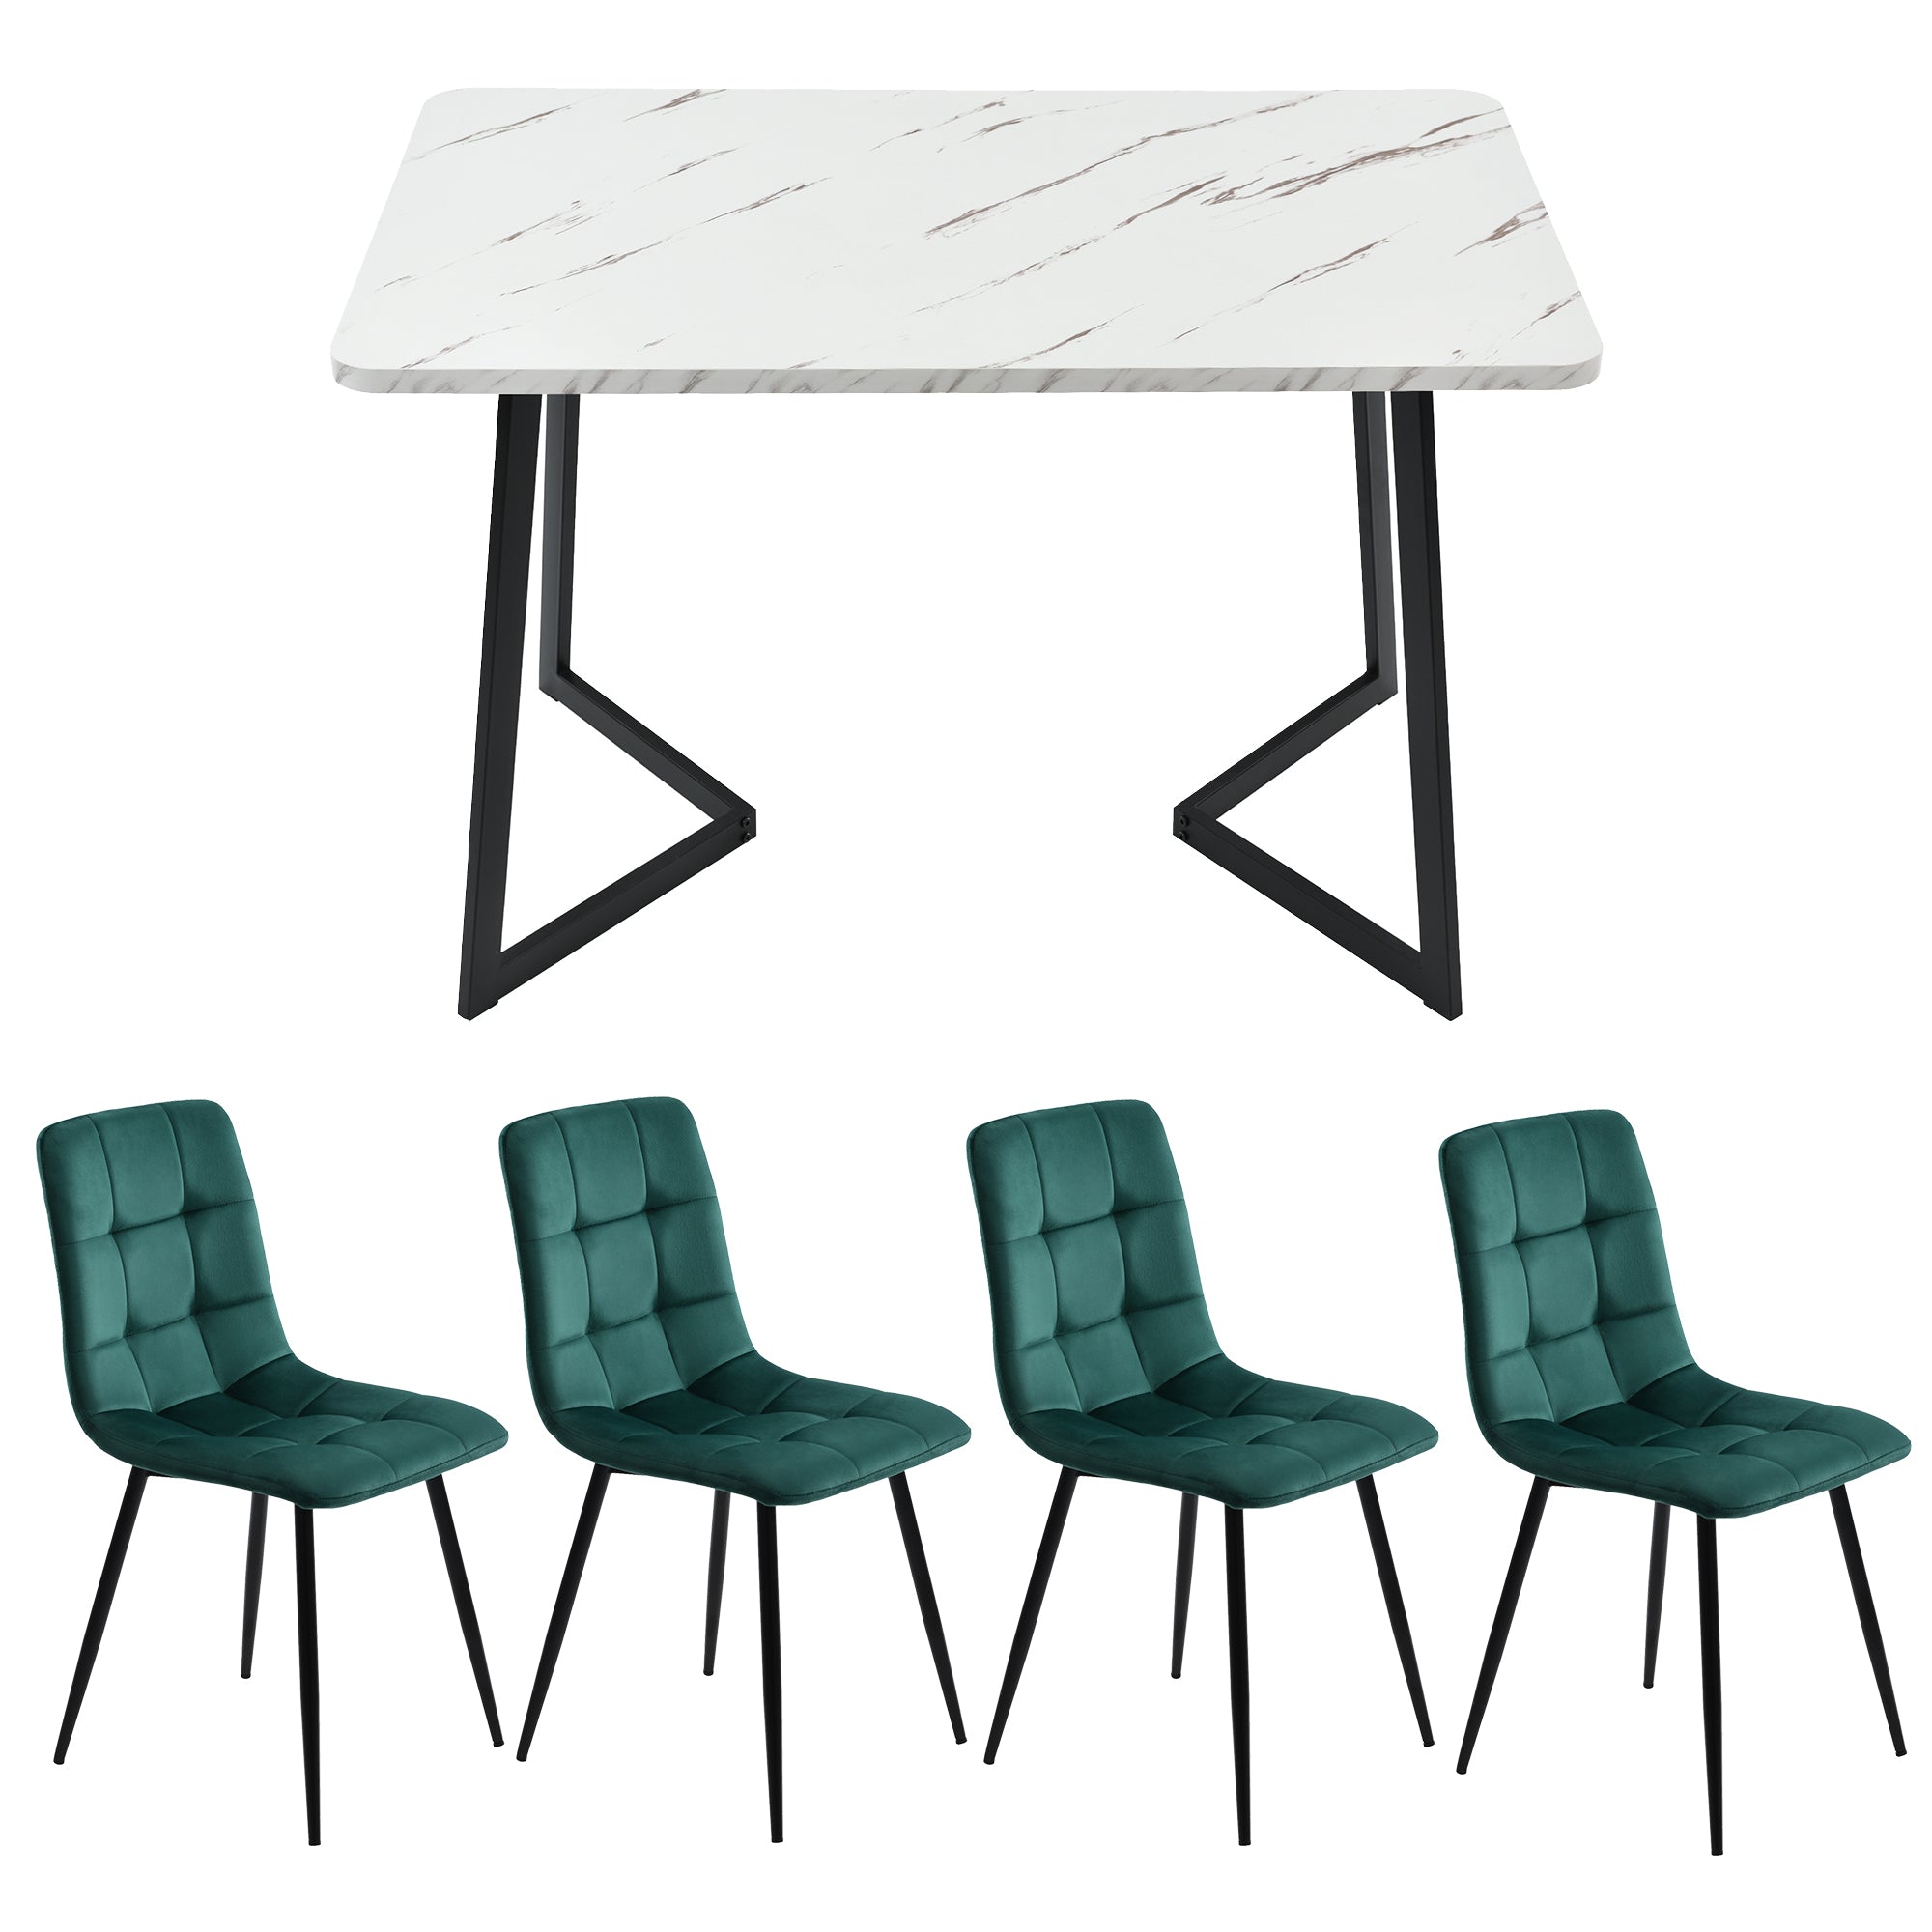 okwish Esstisch mit 4 Stühlen Set Rechteckiger Esstisch Moderner Küchentisch Set Esszimmerstuhl aus Samt Küchenstuhl 117cm, Grün